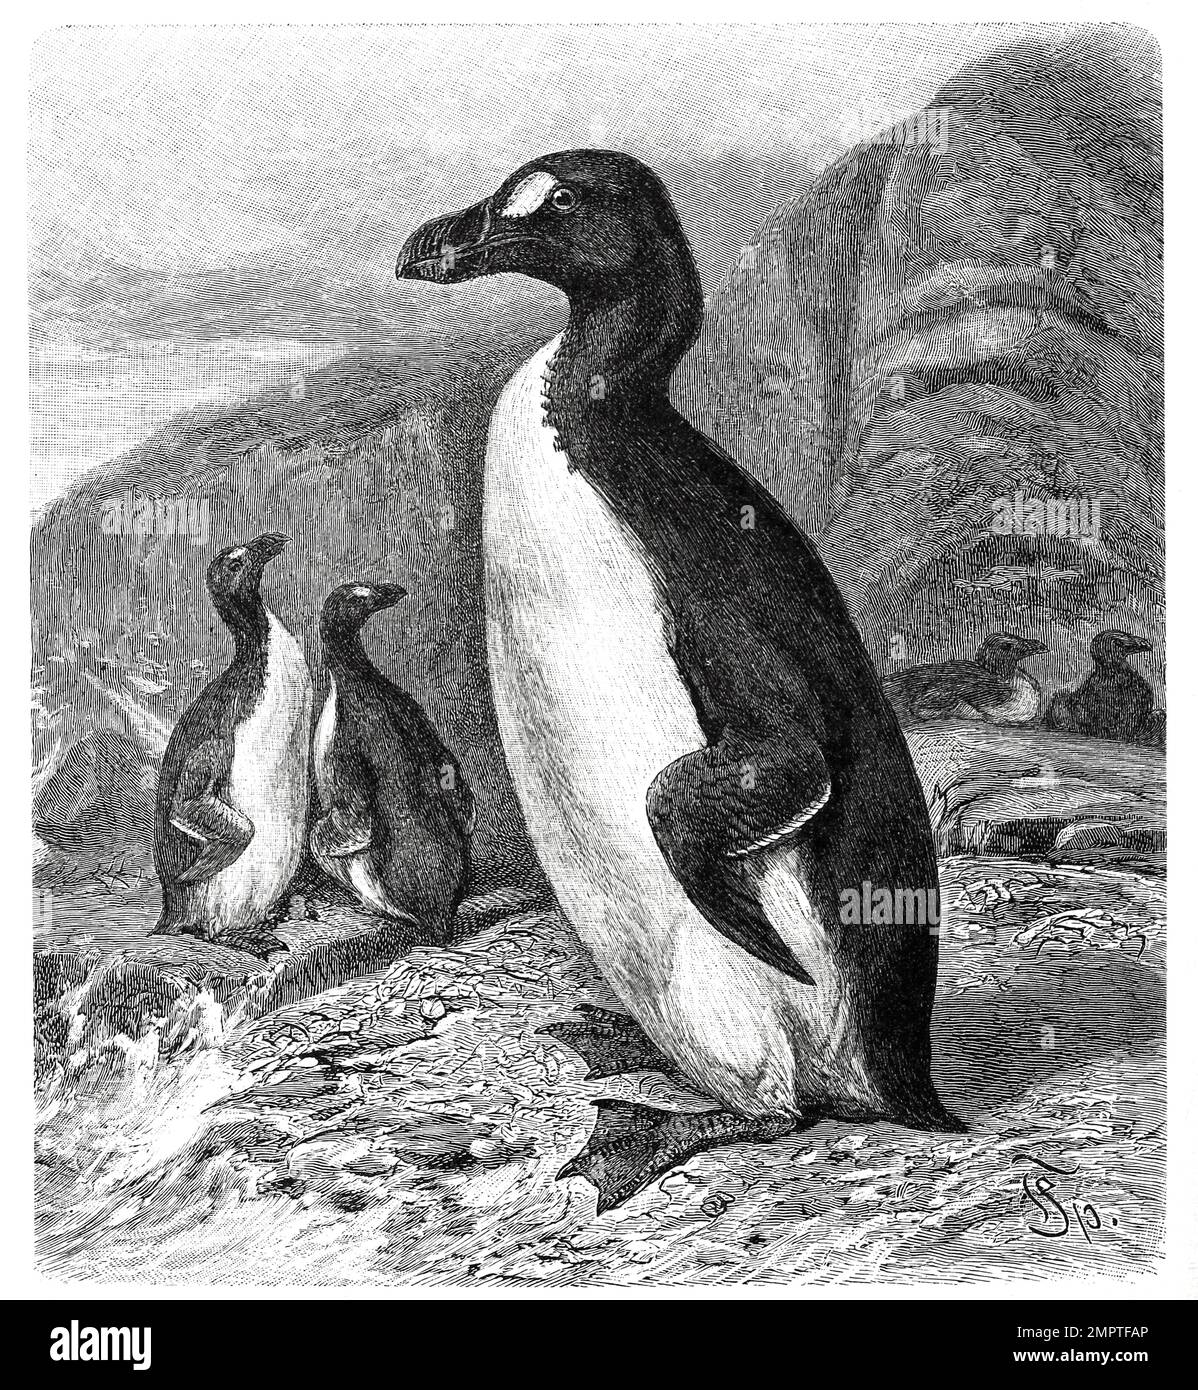 Vogel, Riesenalk, Pinguinus impennis, Syn. Alca impennis ist ein ausgestorbener flugunfähiger Seevogel, Historisch, digital restaurierte Reproduktion von einer Vorlage aus dem 19. Jahrhundert Stock Photo